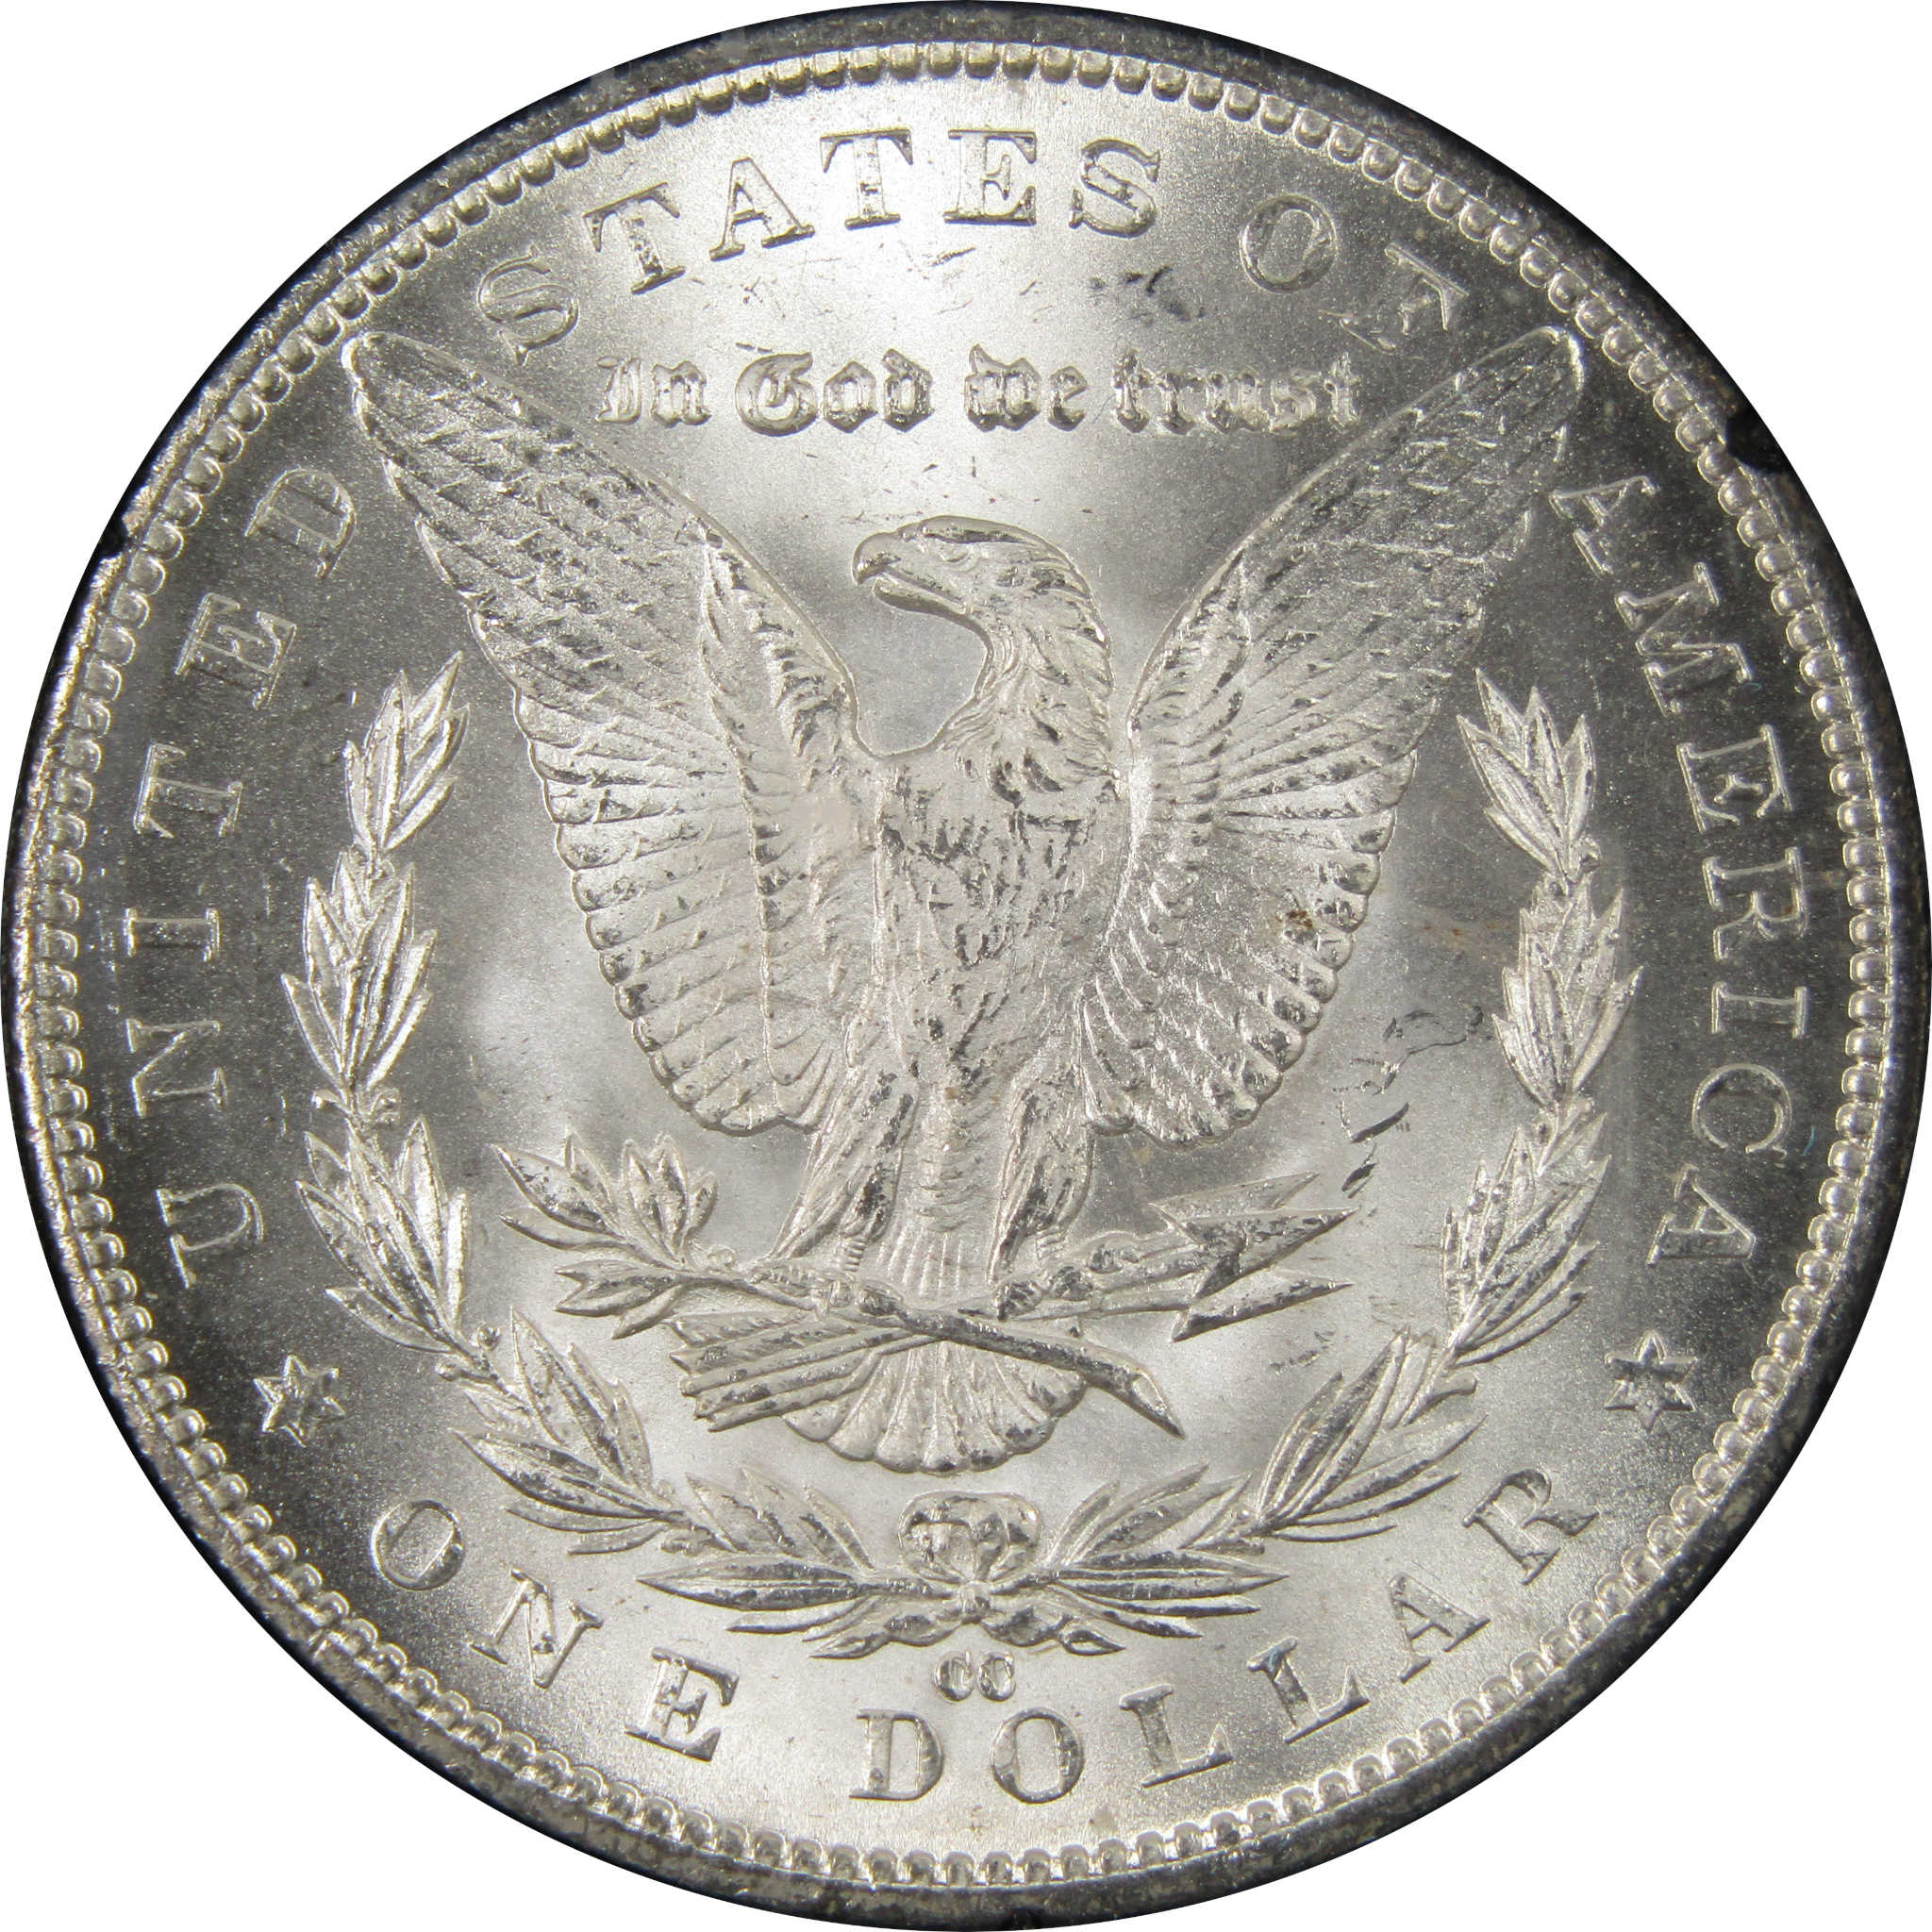 1884 CC GSA Morgan Dollar BU Uncirculated Silver $1 Coin SKU:I9858 - Morgan coin - Morgan silver dollar - Morgan silver dollar for sale - Profile Coins &amp; Collectibles